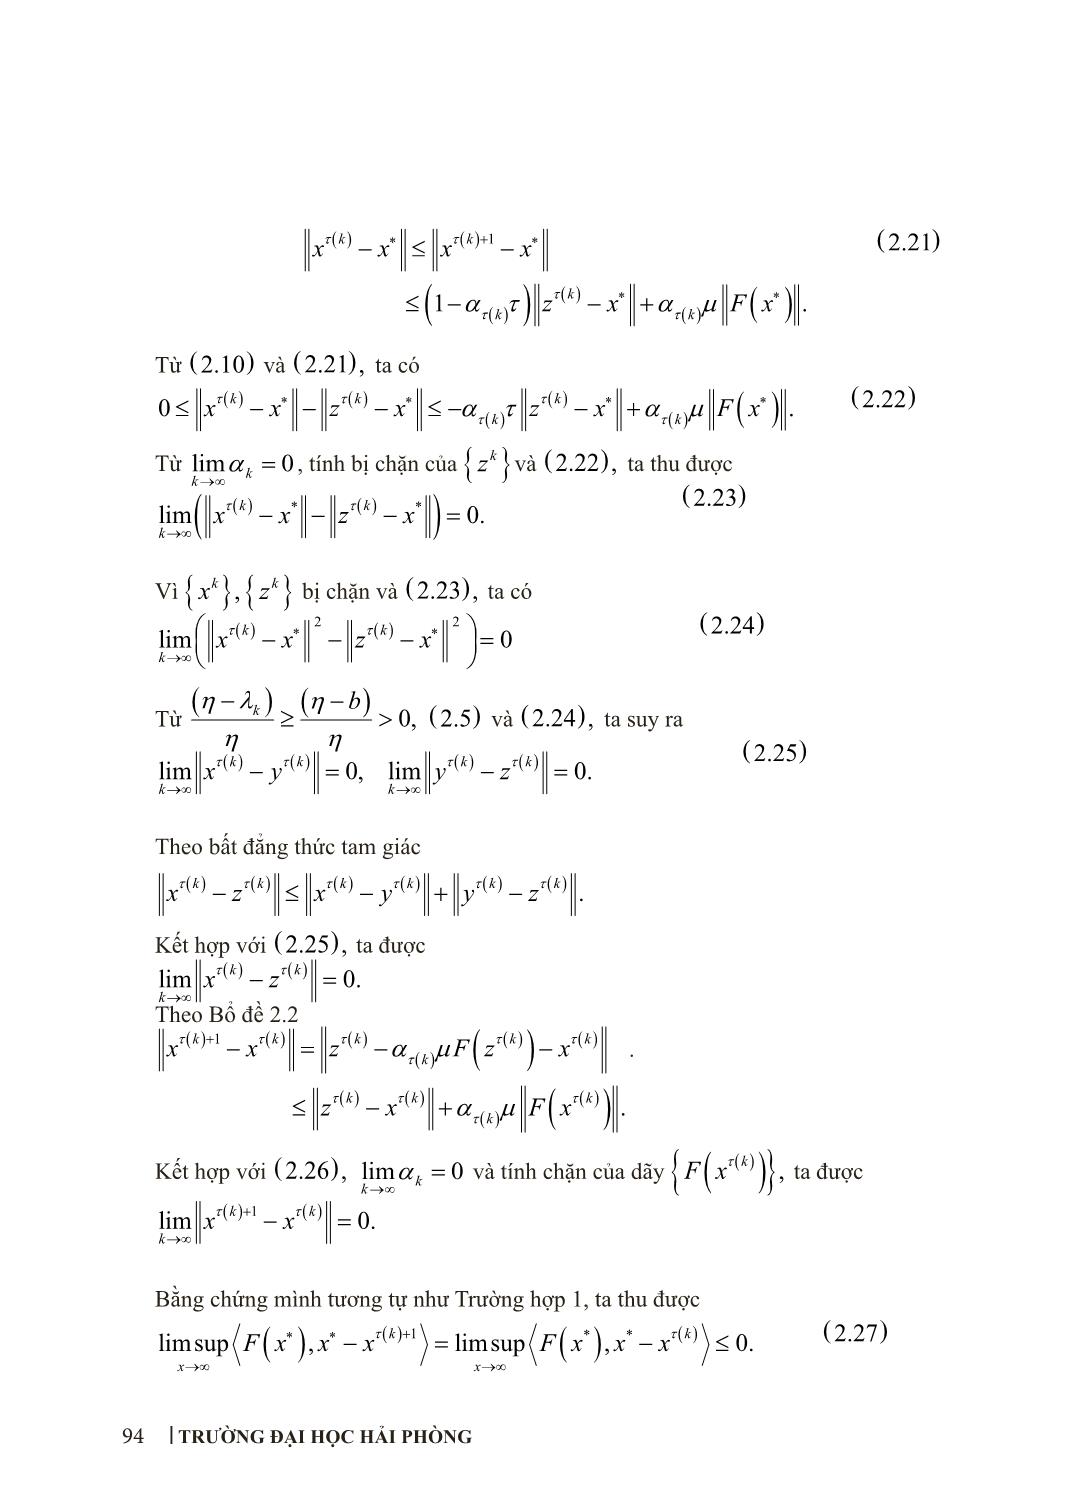 Phương pháp dưới đạo hàm tăng cường giải bài toán bất đẳng thức biến phân hai cấp trang 9